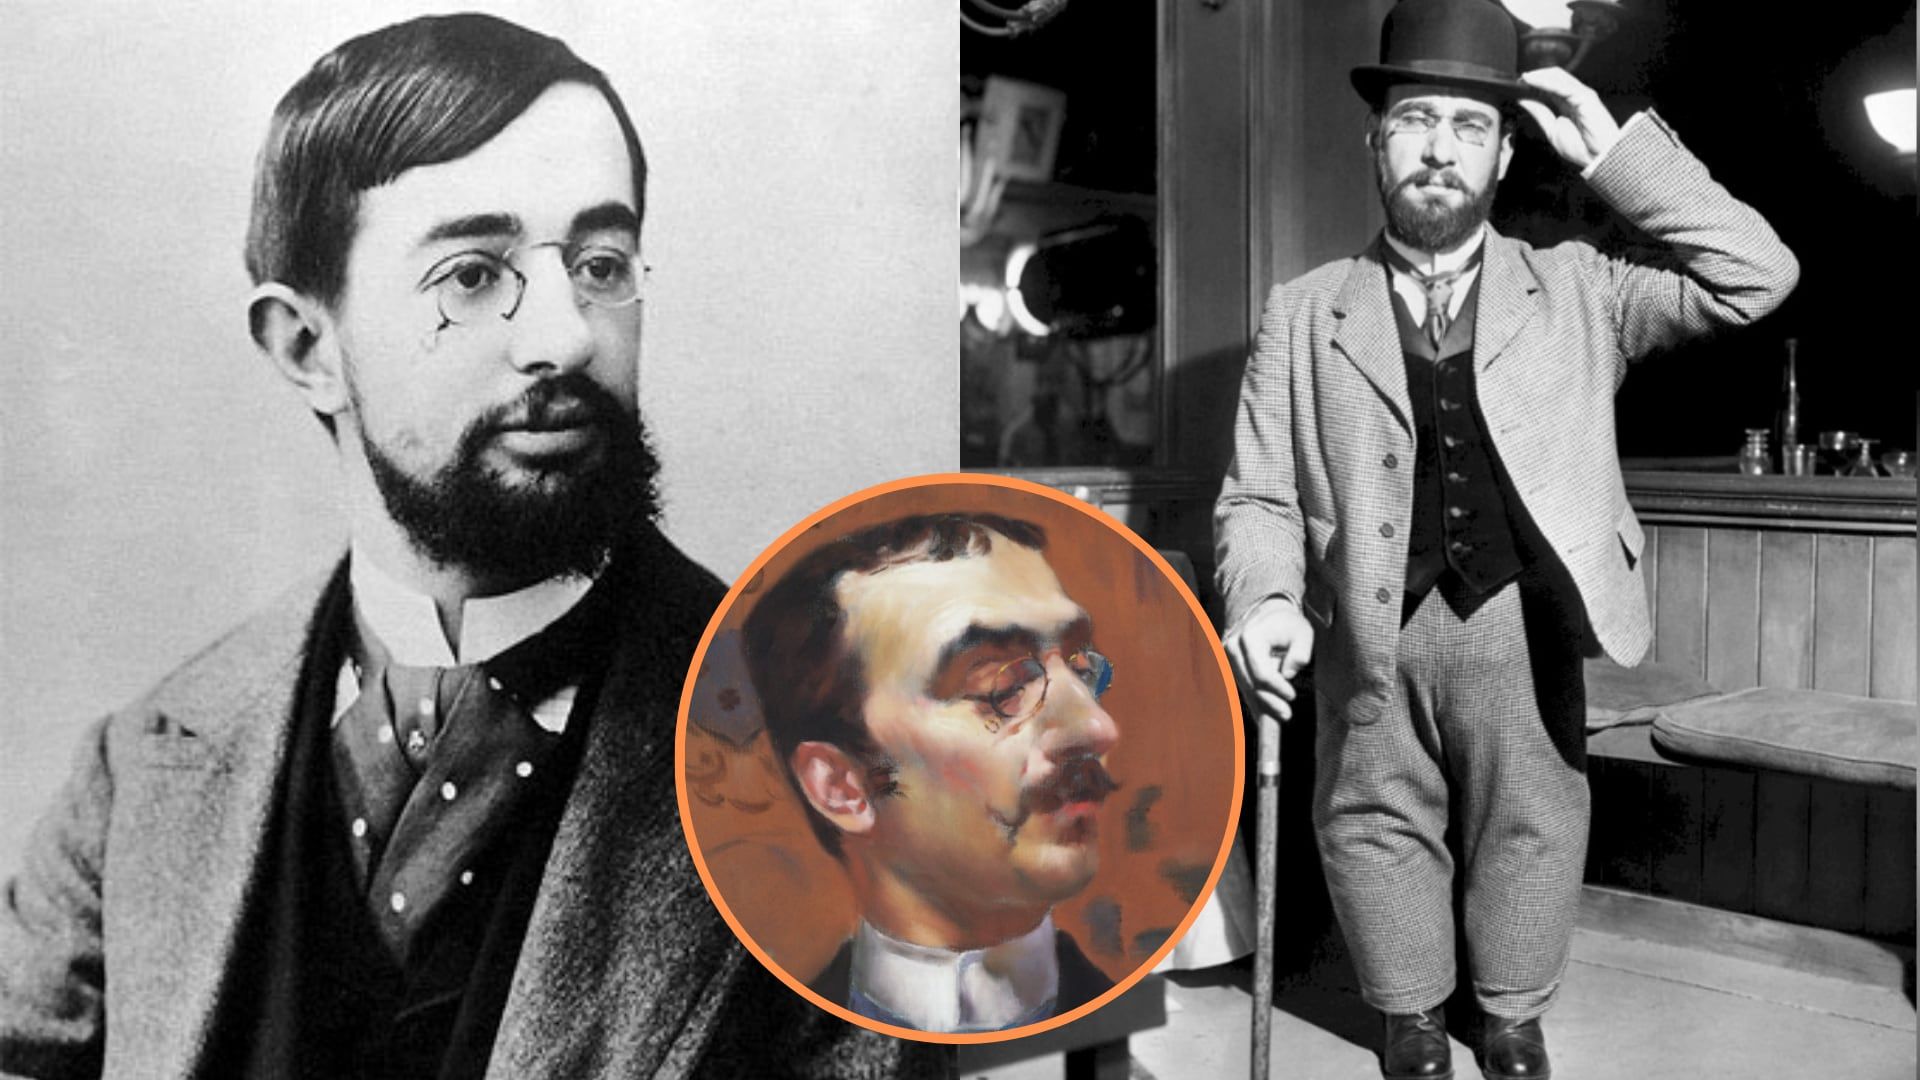 ¿Quién era Toulouse-Lautrec? El excéntrico pintor francés que nació aristócrata, pero eligió vivir en los bajos mundos parisinos